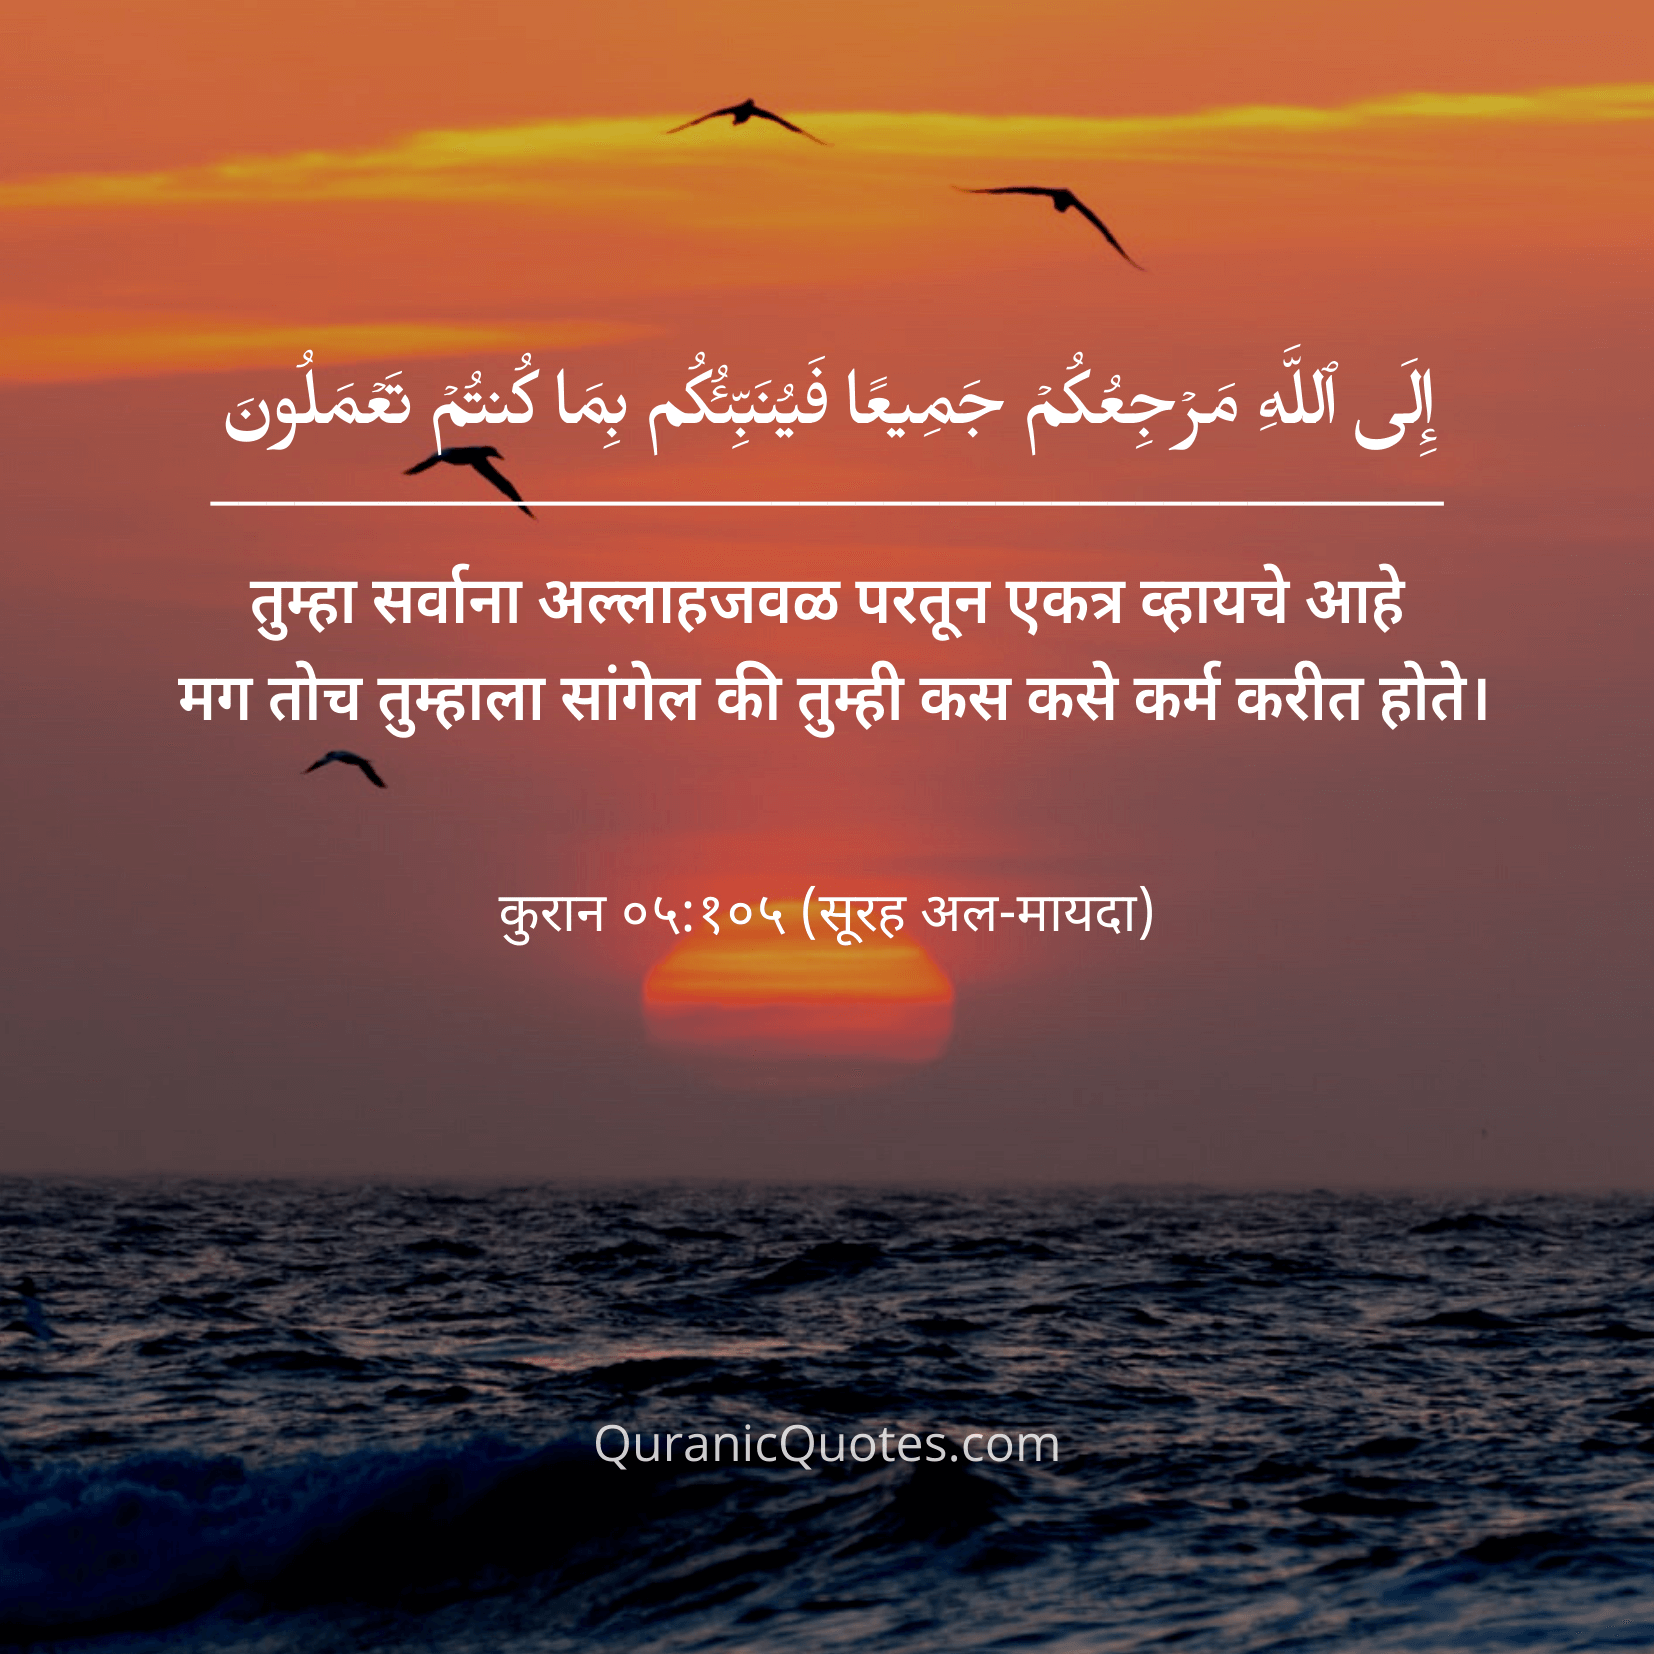 Quranic Quotes Marathi #02